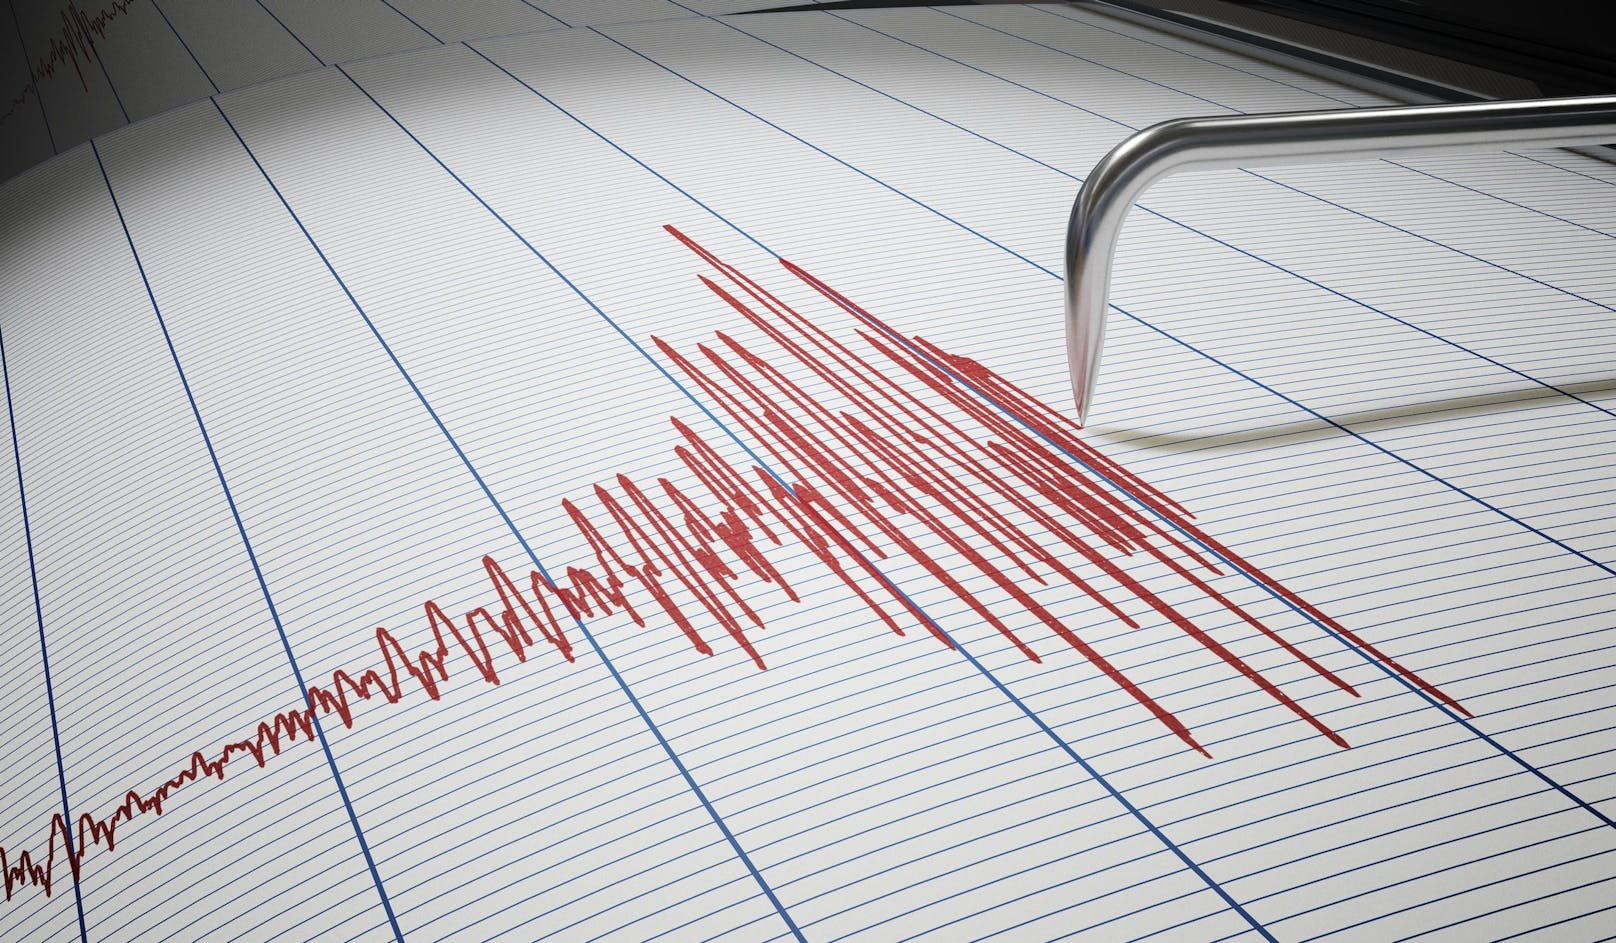 Ein leichtes Erdbeben wurde im südlichen NÖ registriert.